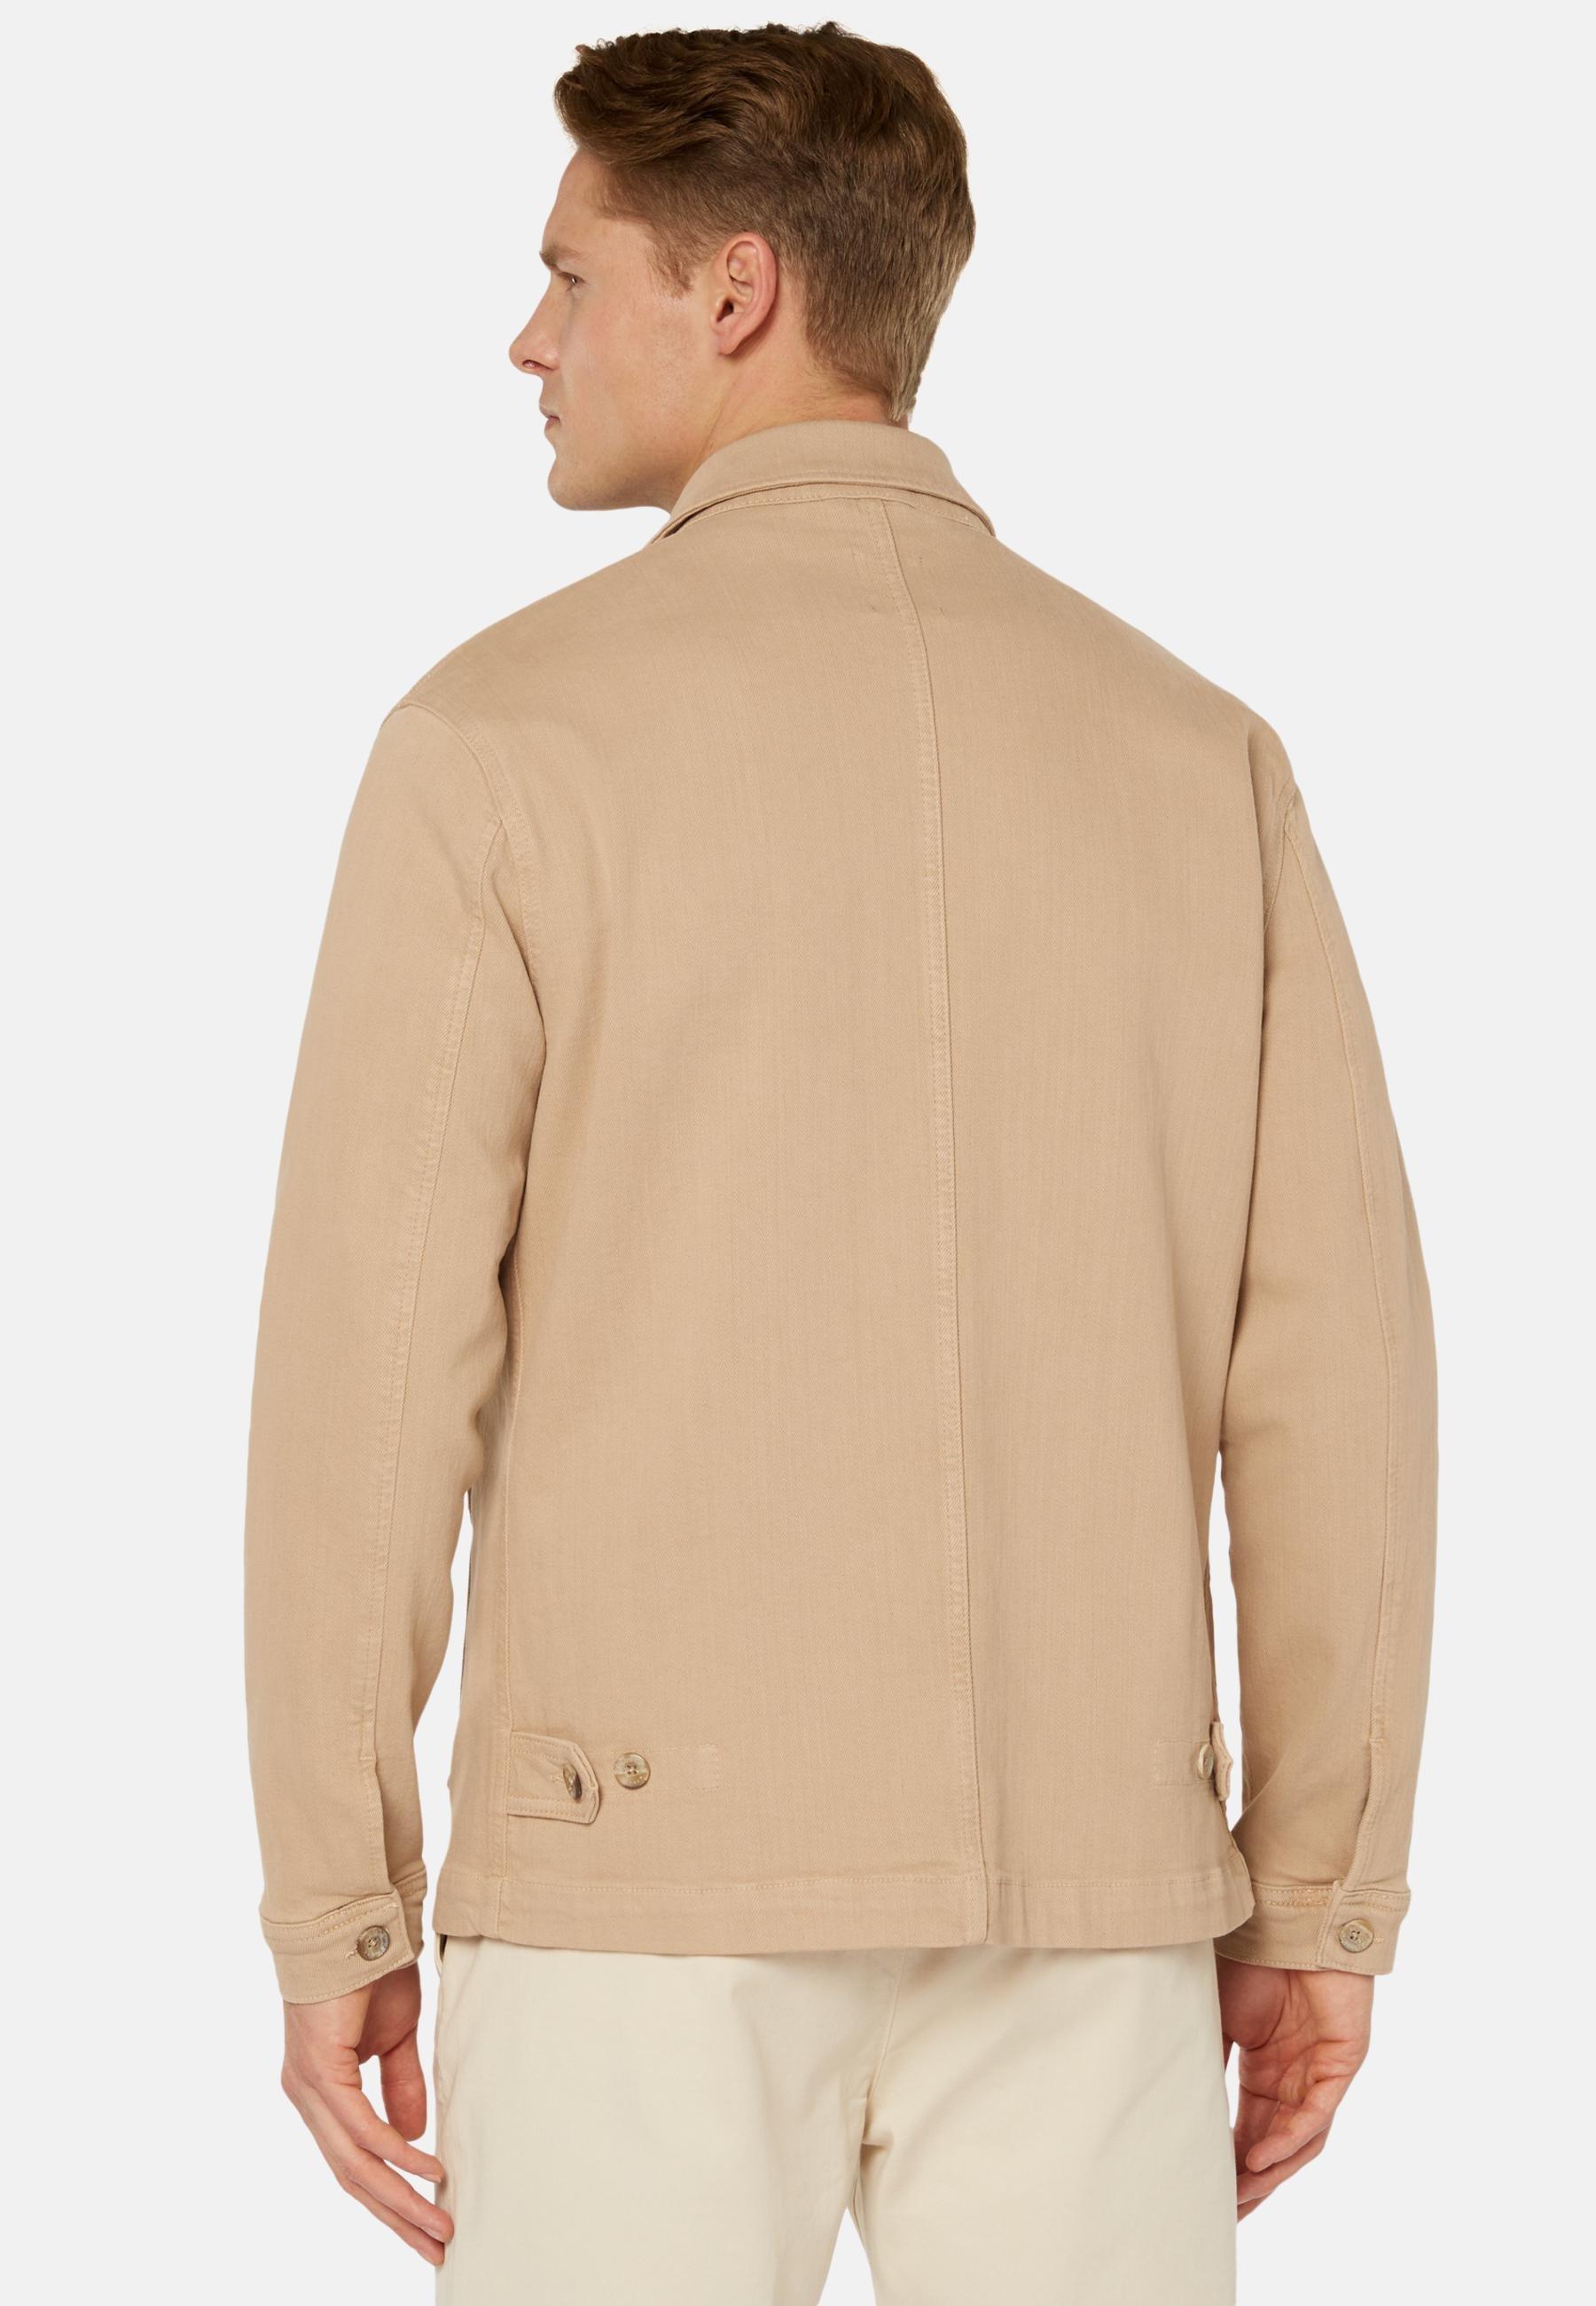 Boggi Milano - Beige Cotton Shirt Jacket